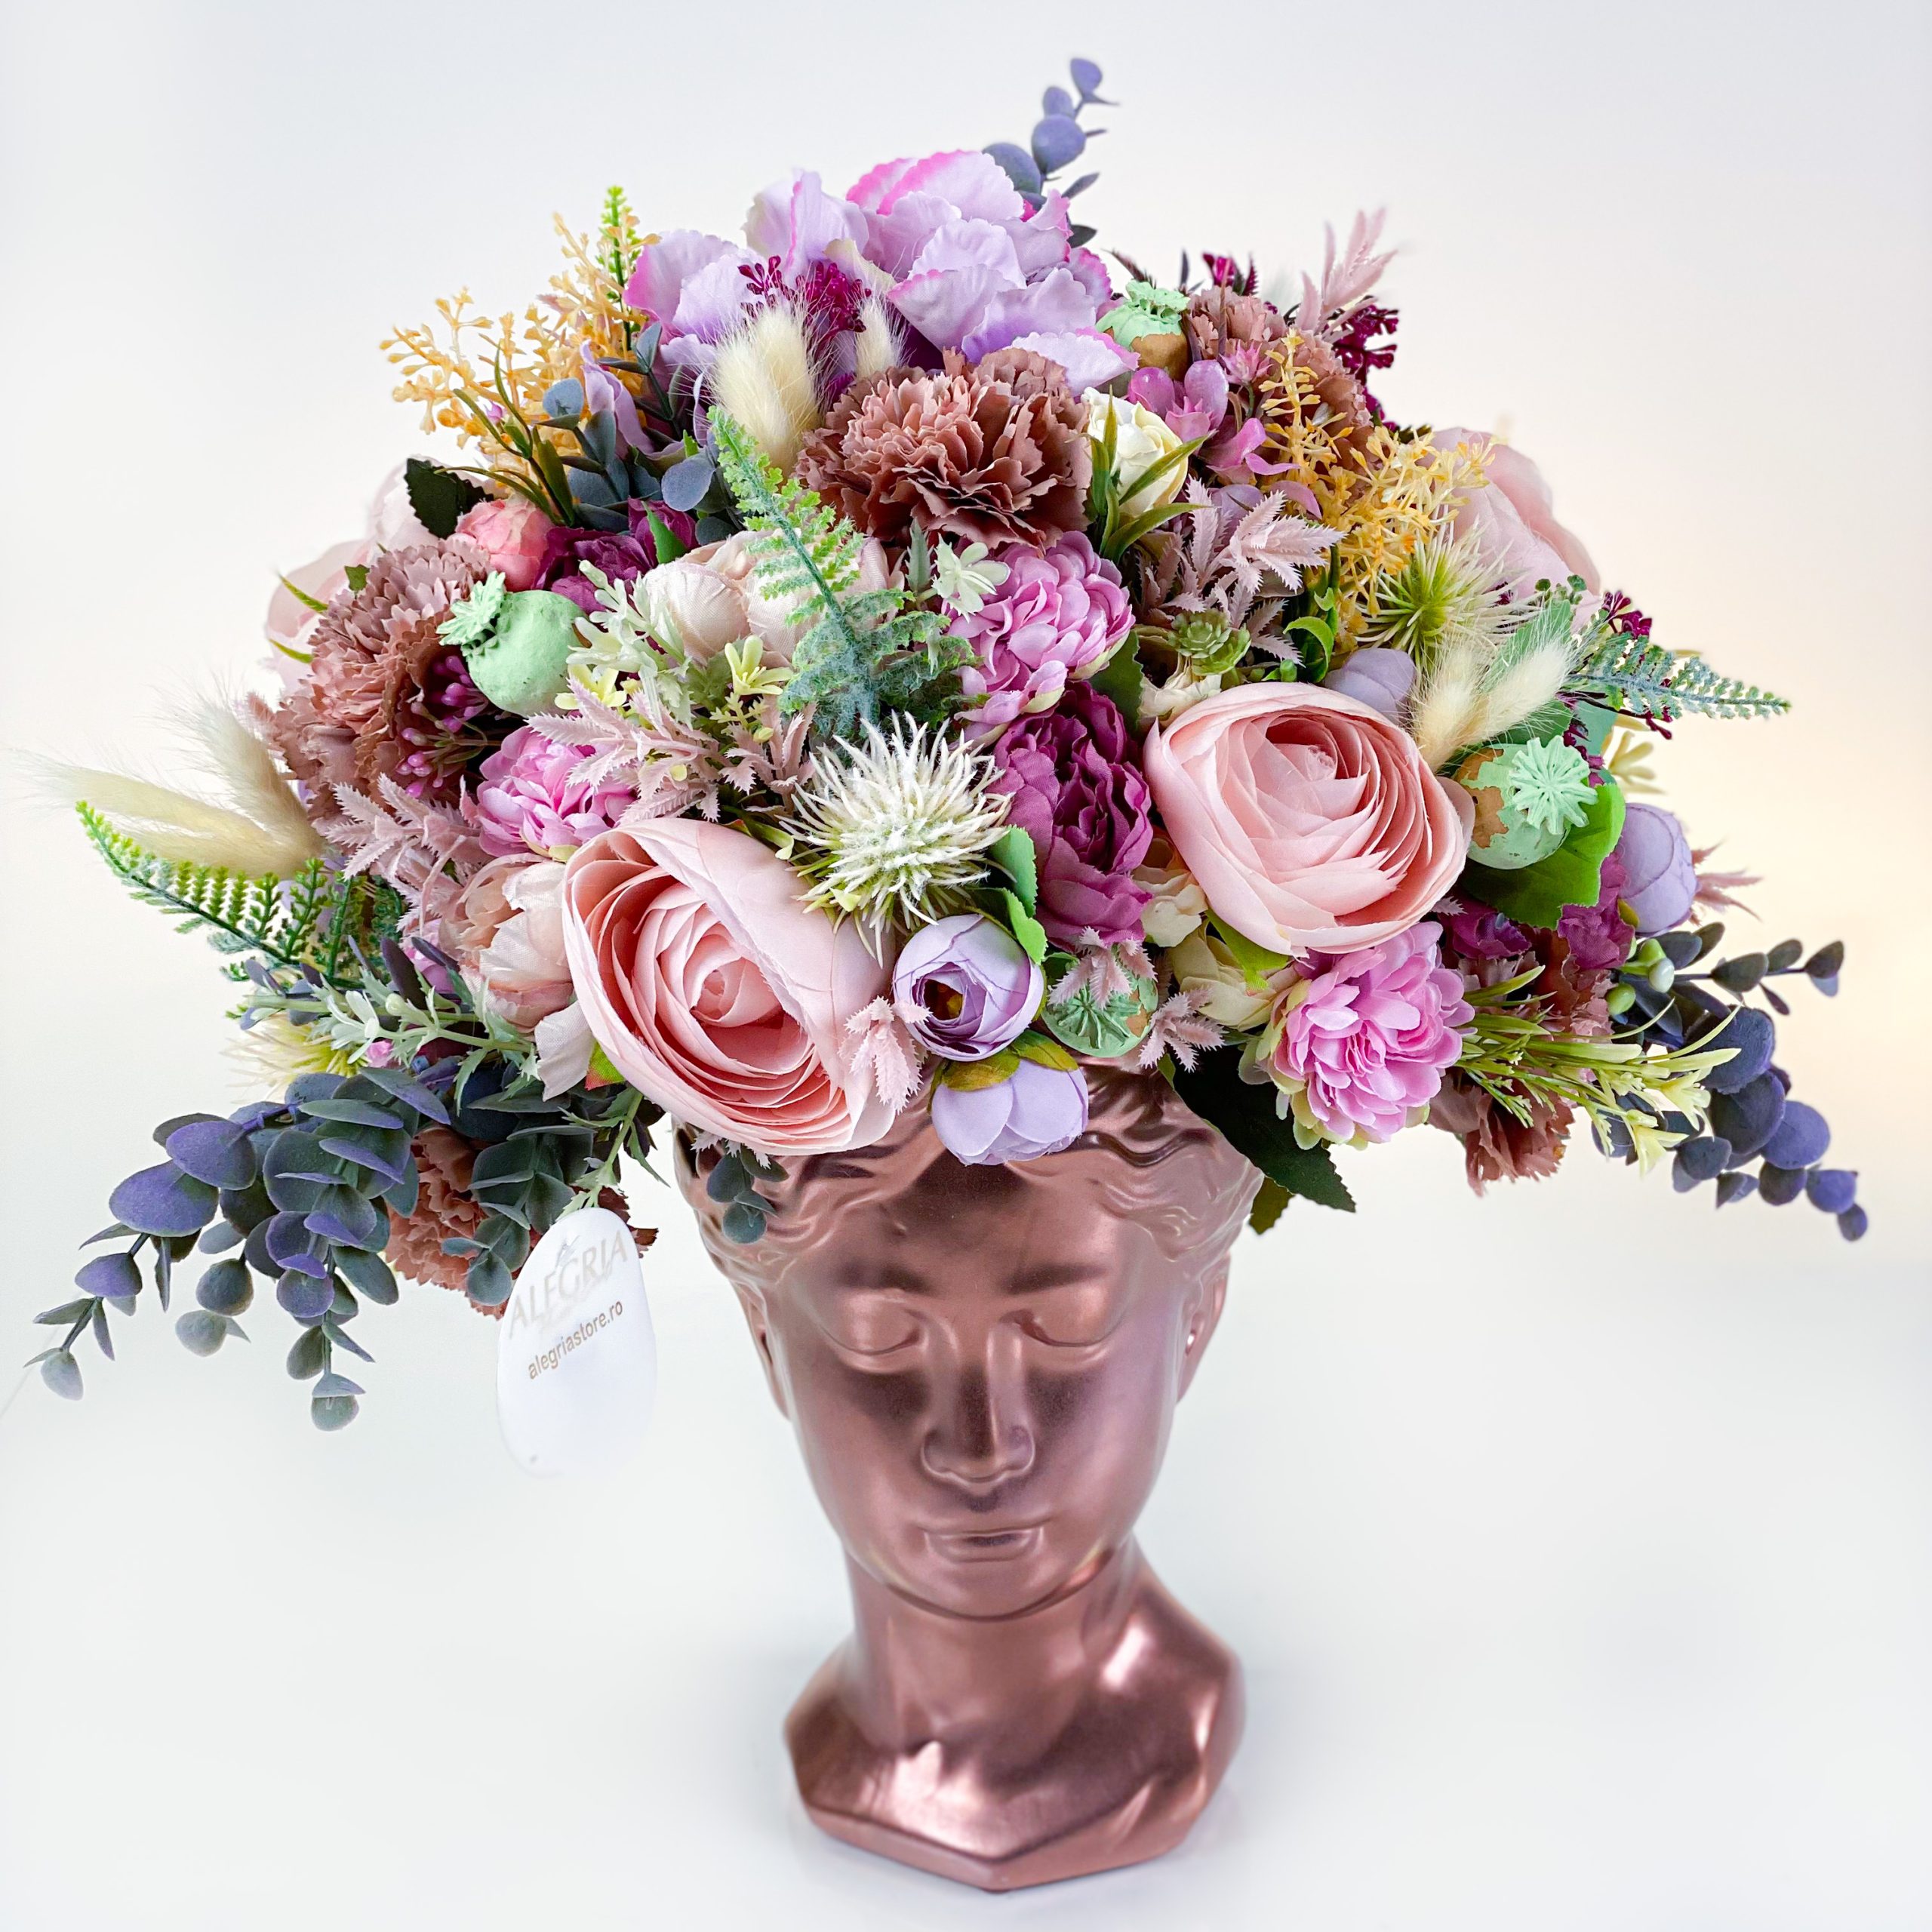 Cadou floral VENUS aranjament cu flori uscate si artificiale boheme theme in pastel rose gold alb si peach 1 scaled